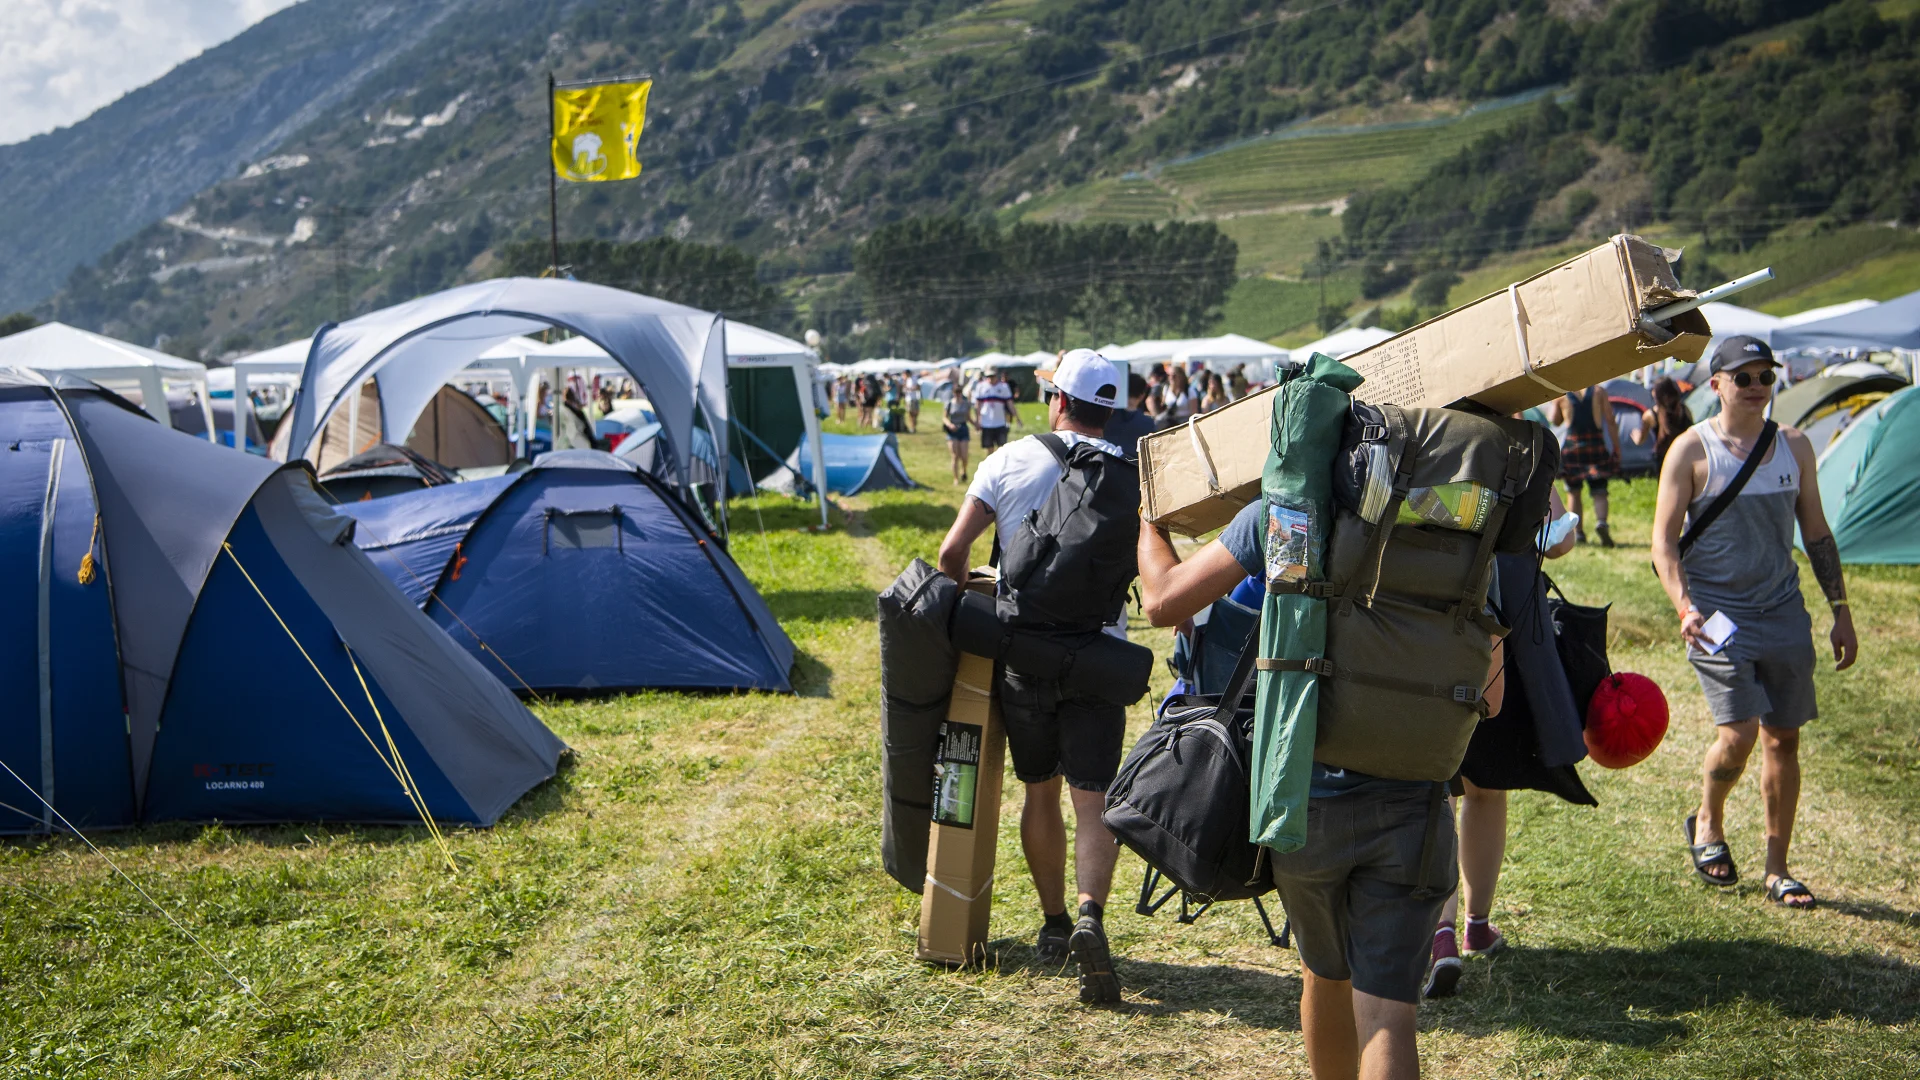 Festival-Fans schleppen Zelte und Gepäck